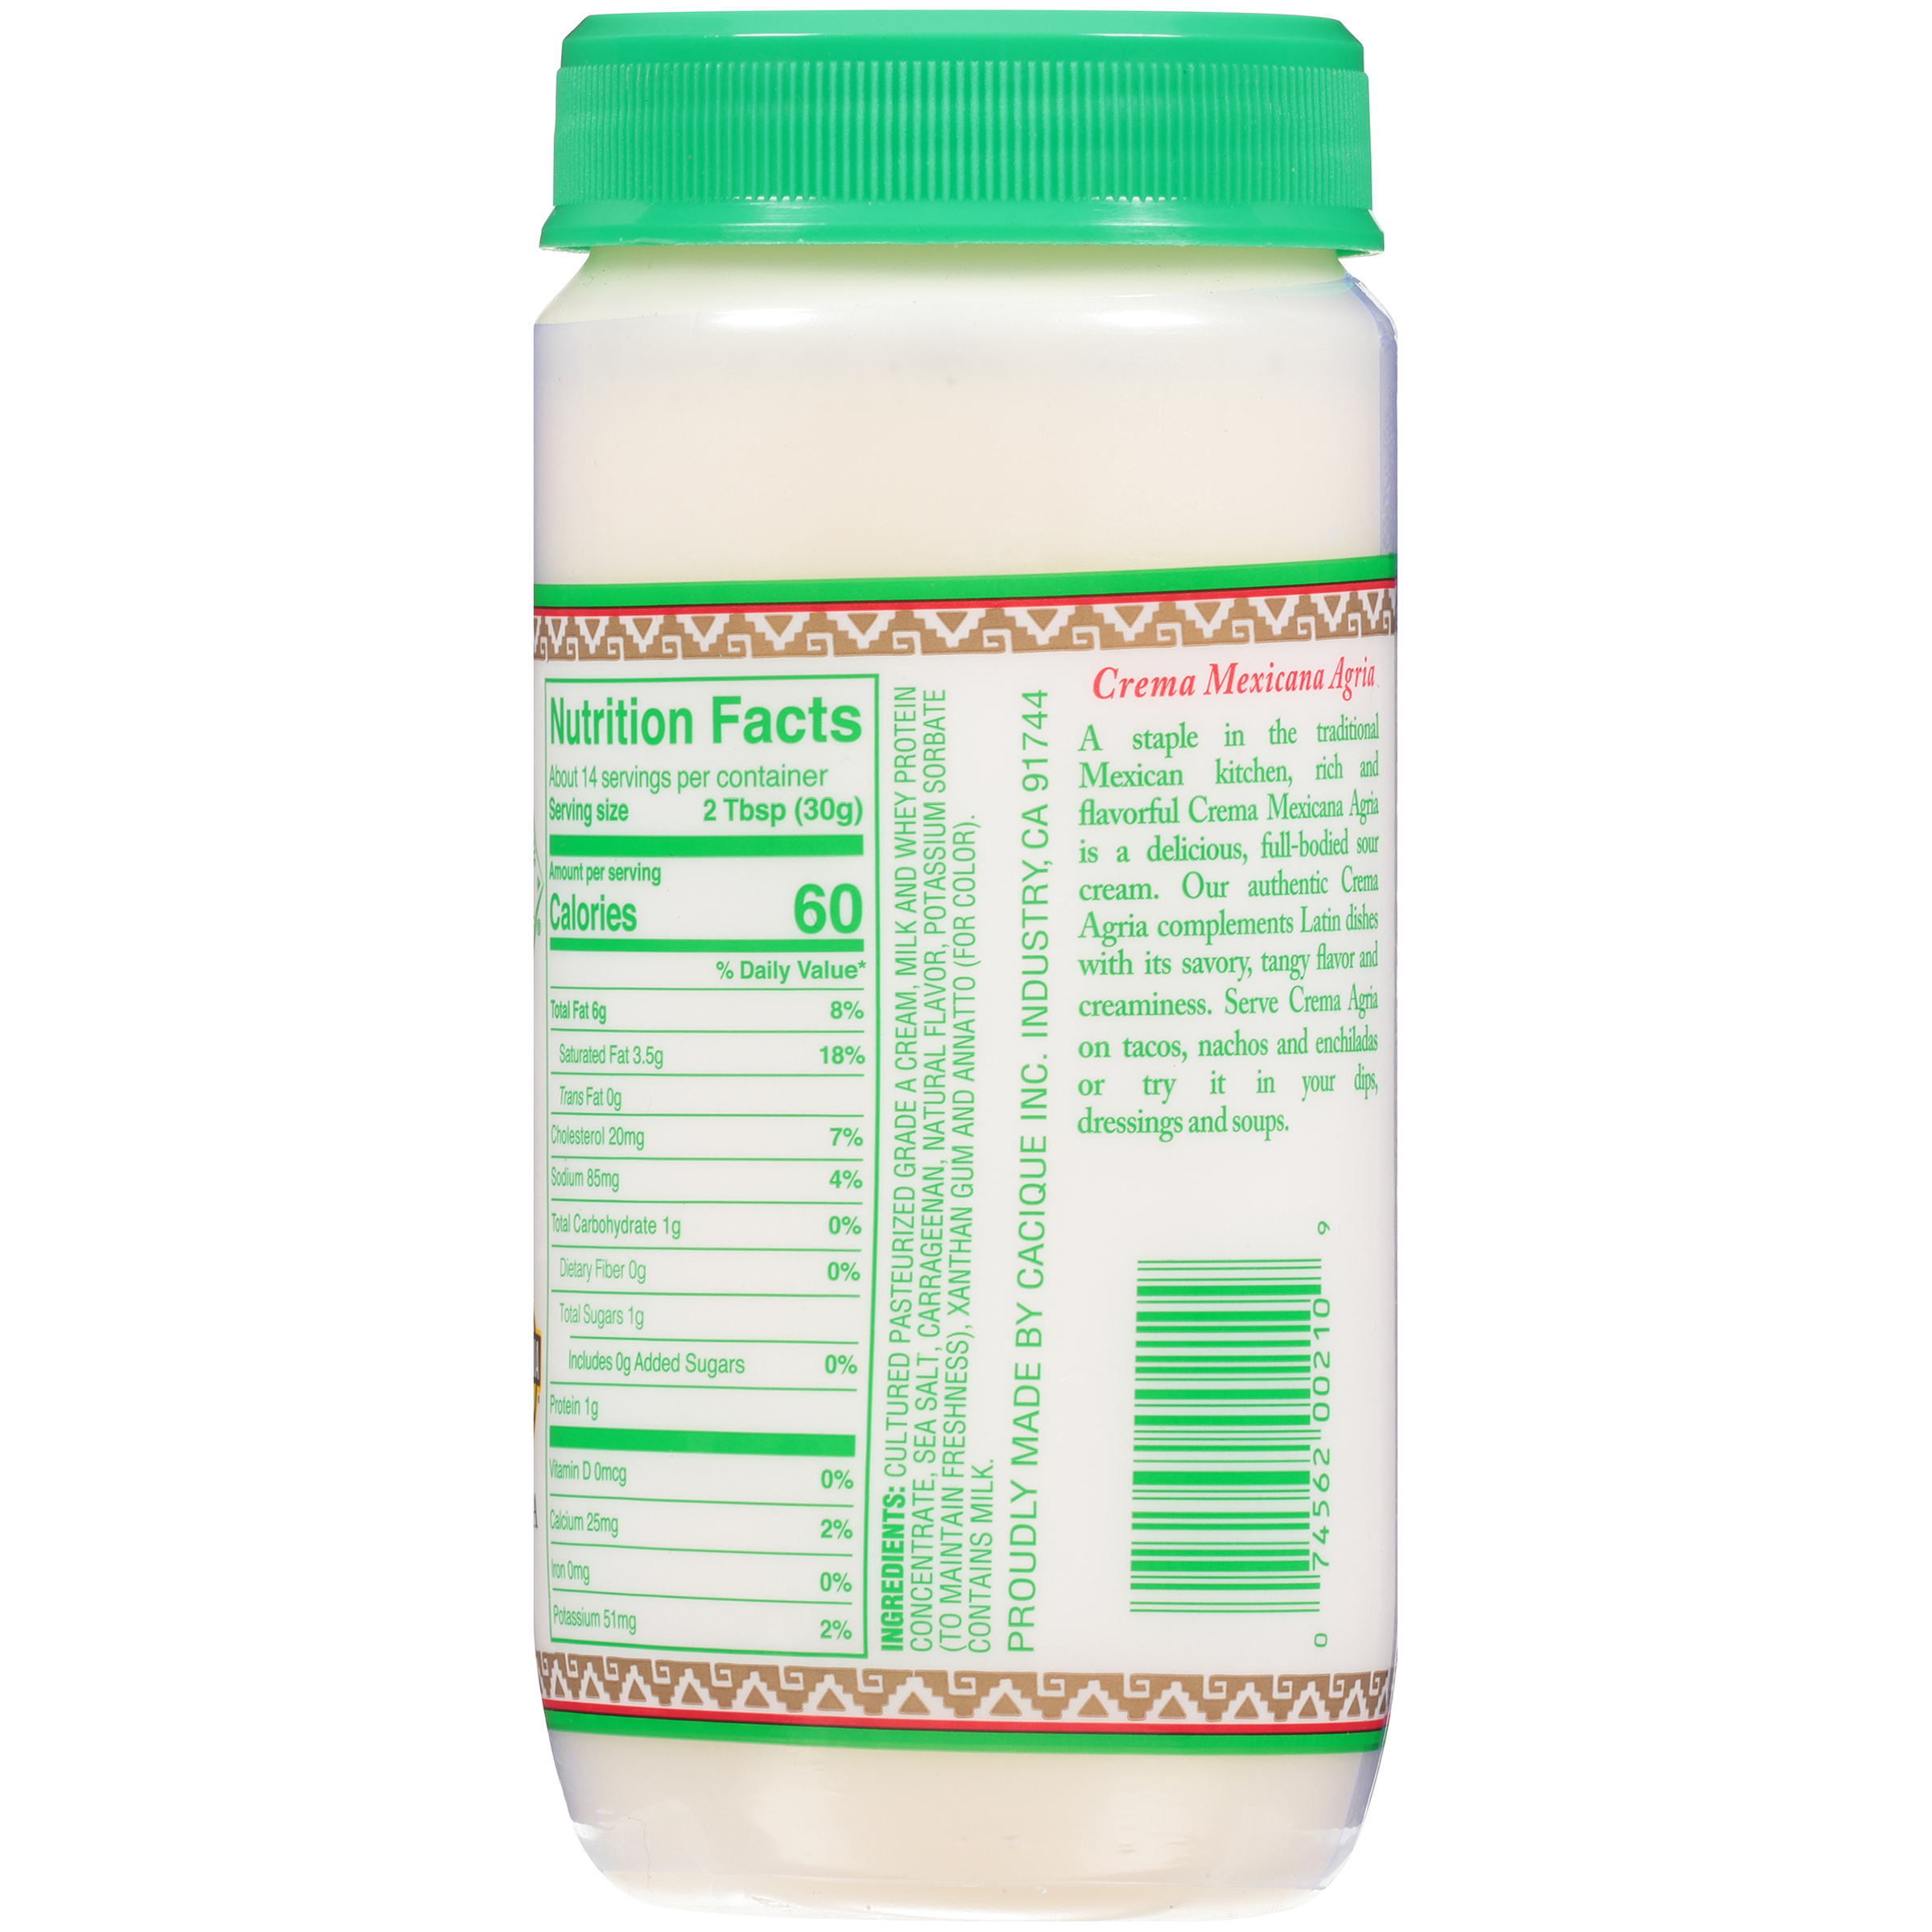 Cacique Crema Mexicana Agria, Sour Cream, 15 oz Jar (Refrigerated) - image 2 of 8